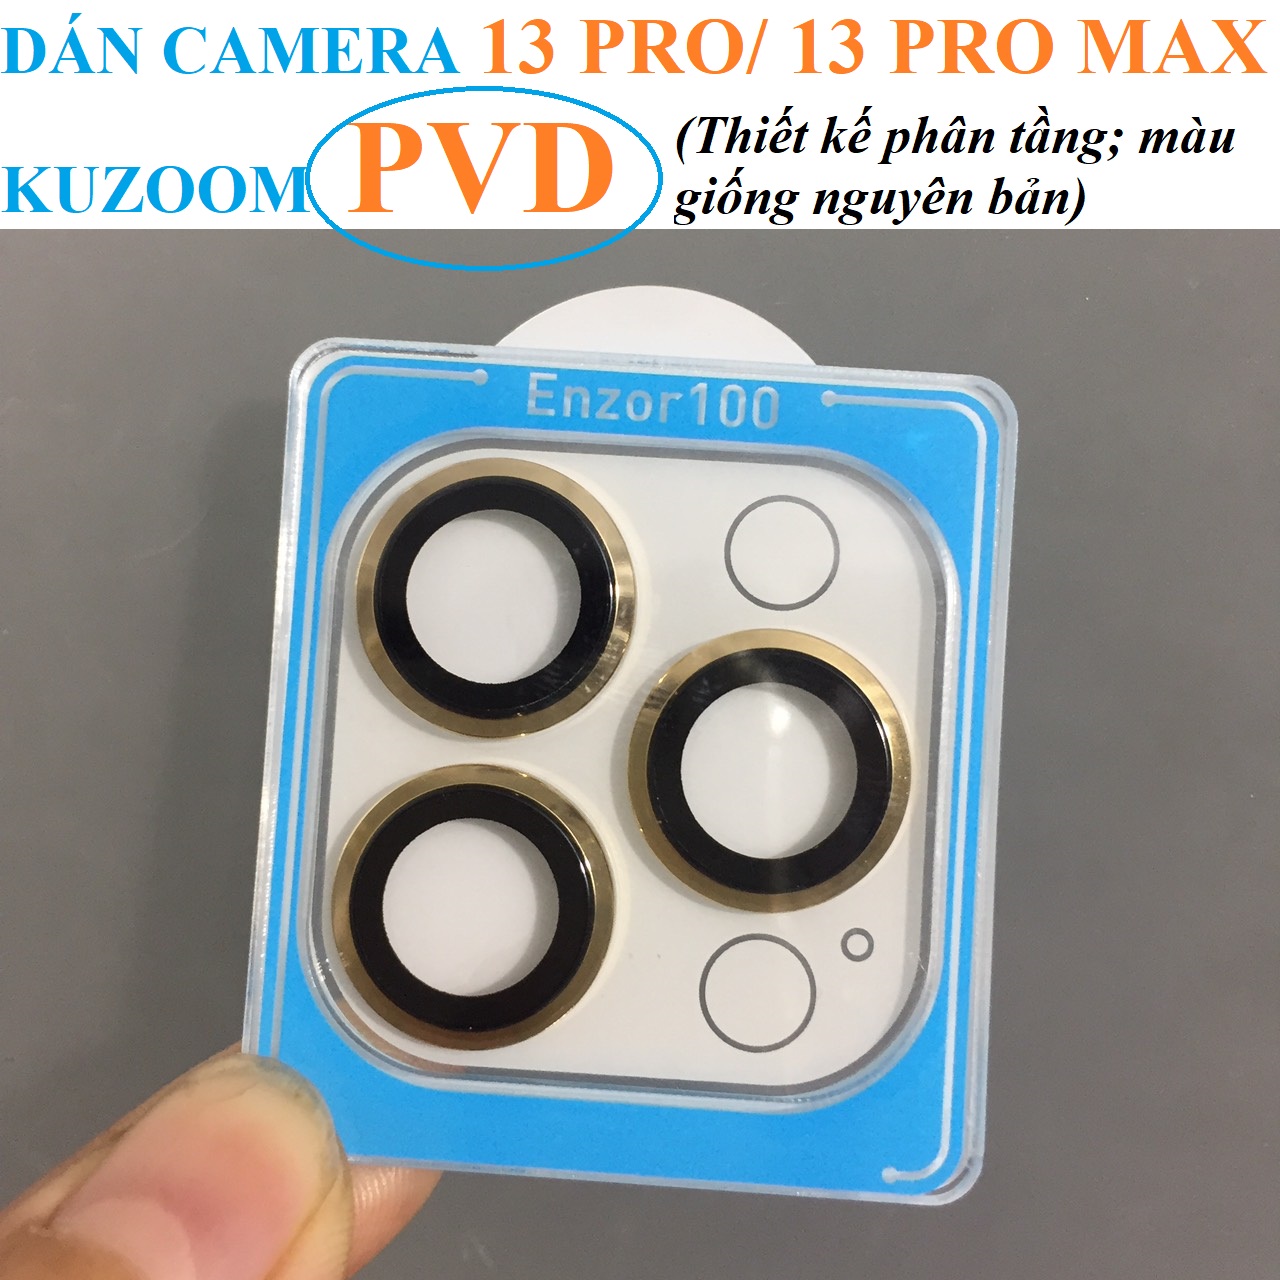 [ iP 13 Pro ; 13 Pro Max ] Cụm cường lực dán camera Kuzoom bản PVD chia tầng _ hàng chính hãng